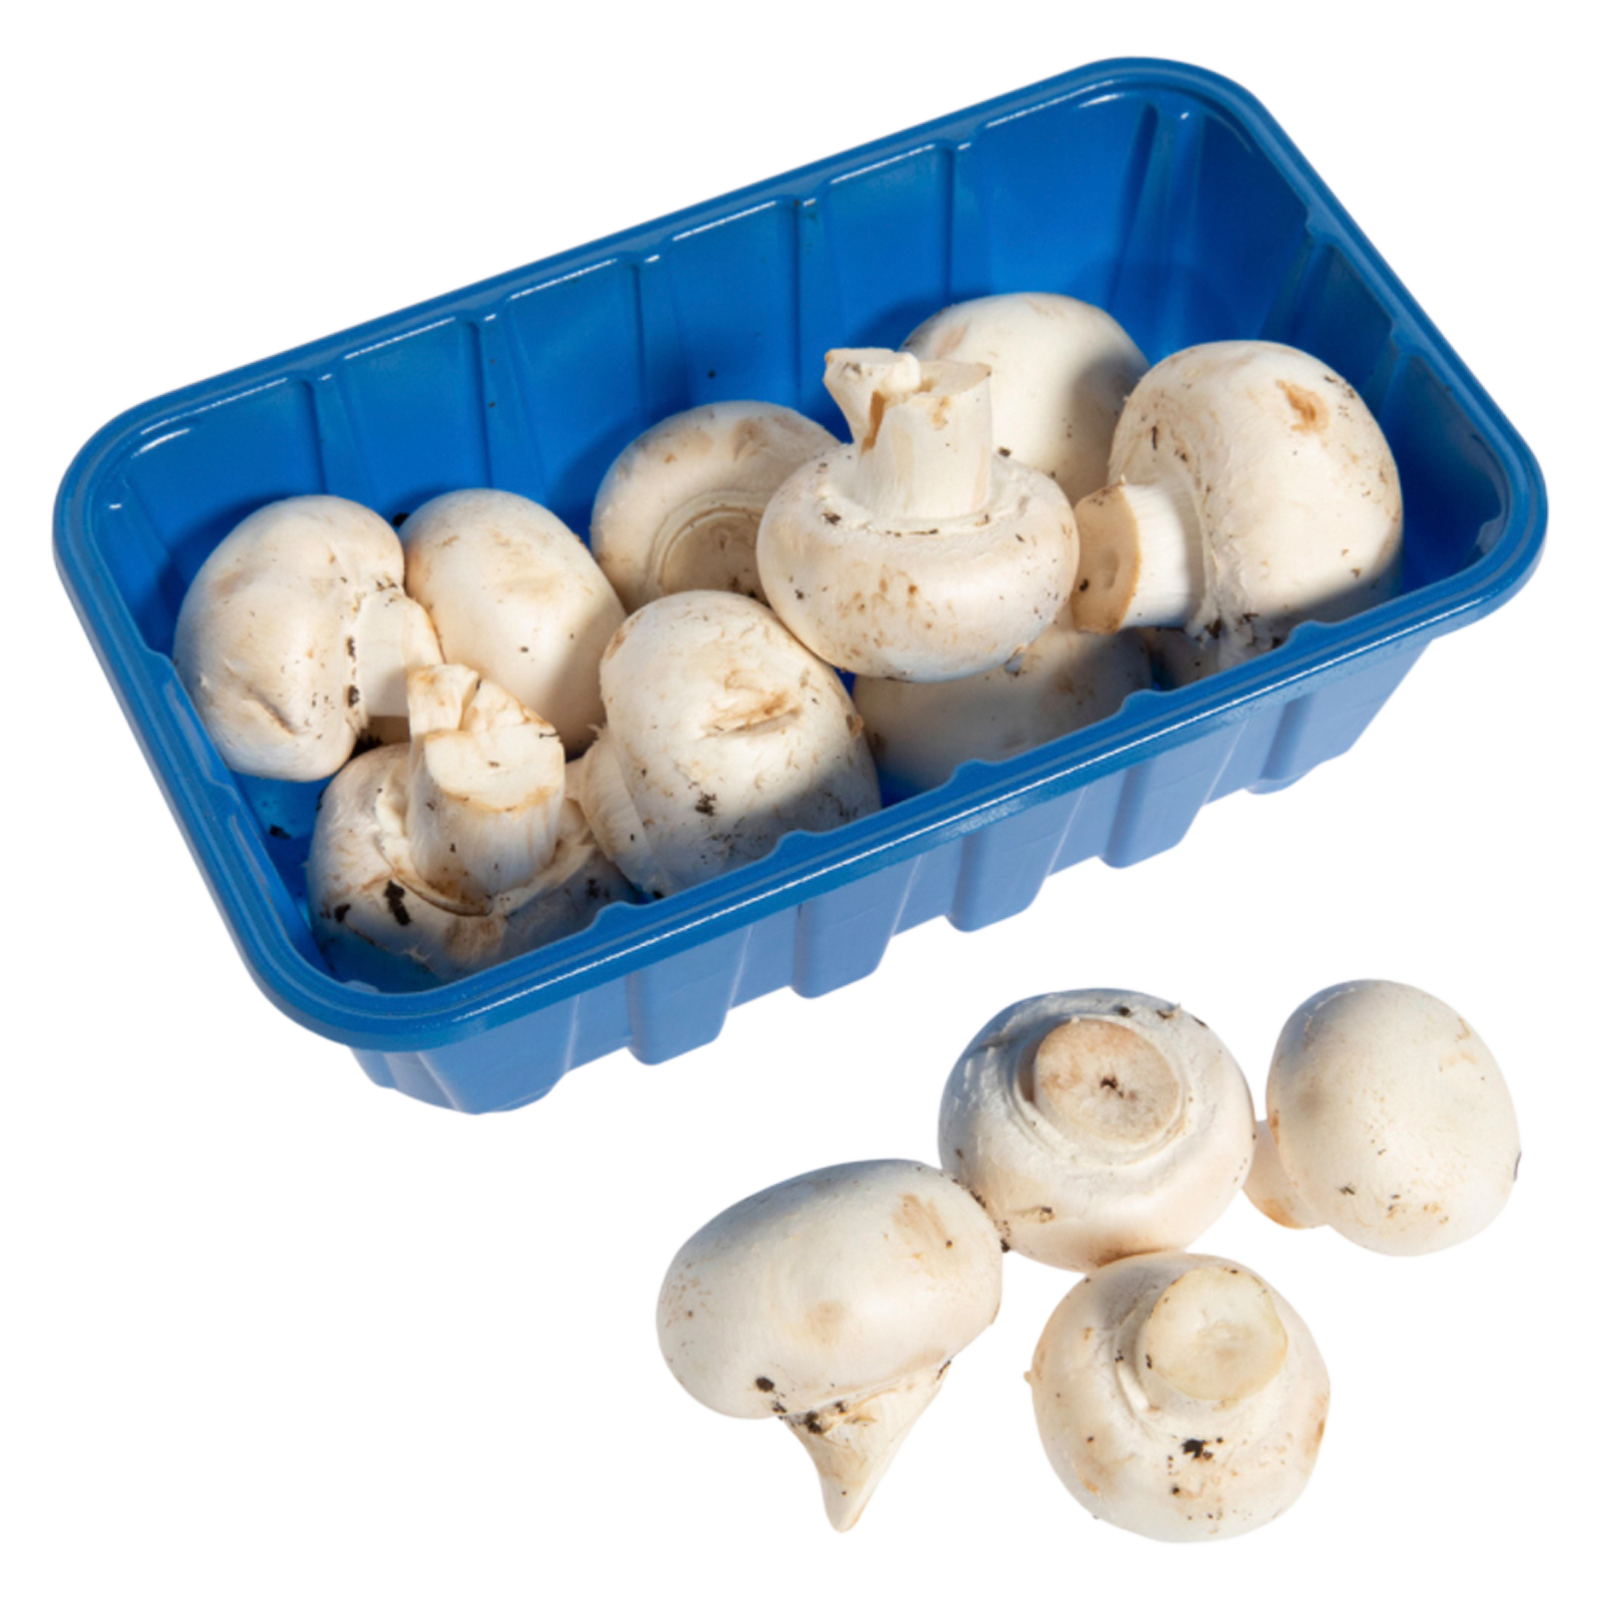 Whole White Mushrooms 8oz